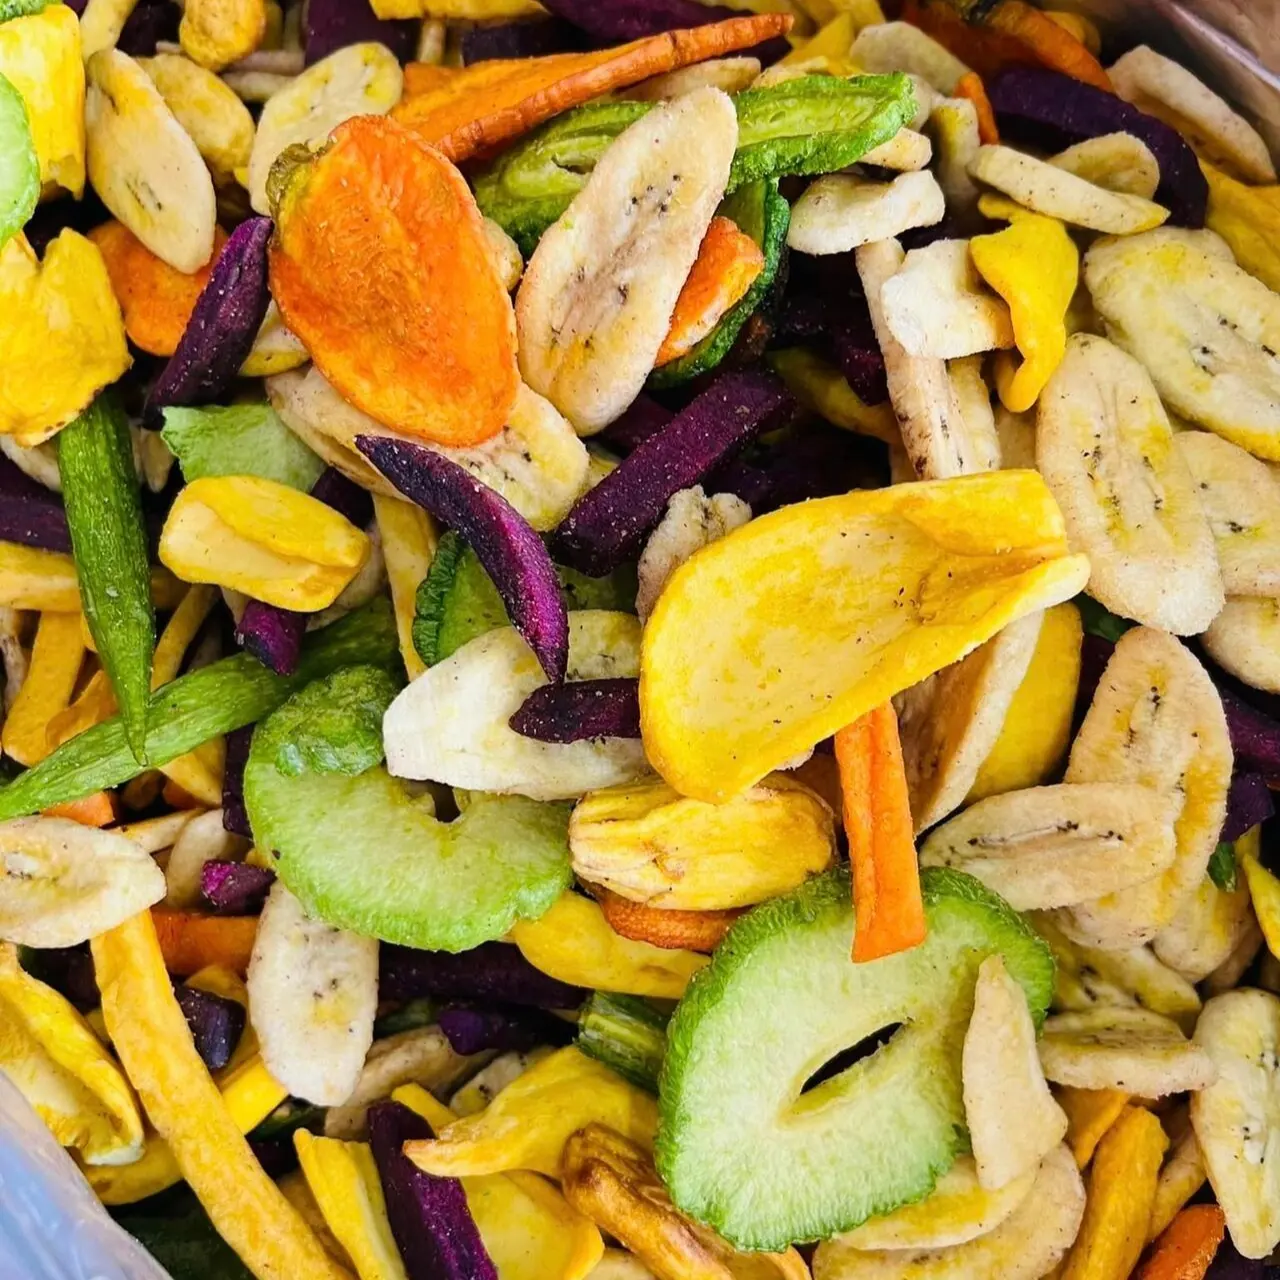 थोक क्रिस्पी मिक्स मीठे सूखे फल और सब्जियां स्नैक फूड थोक पैकिंग के लिए निर्जलित फल और सब्जी स्लाइस चिप्स